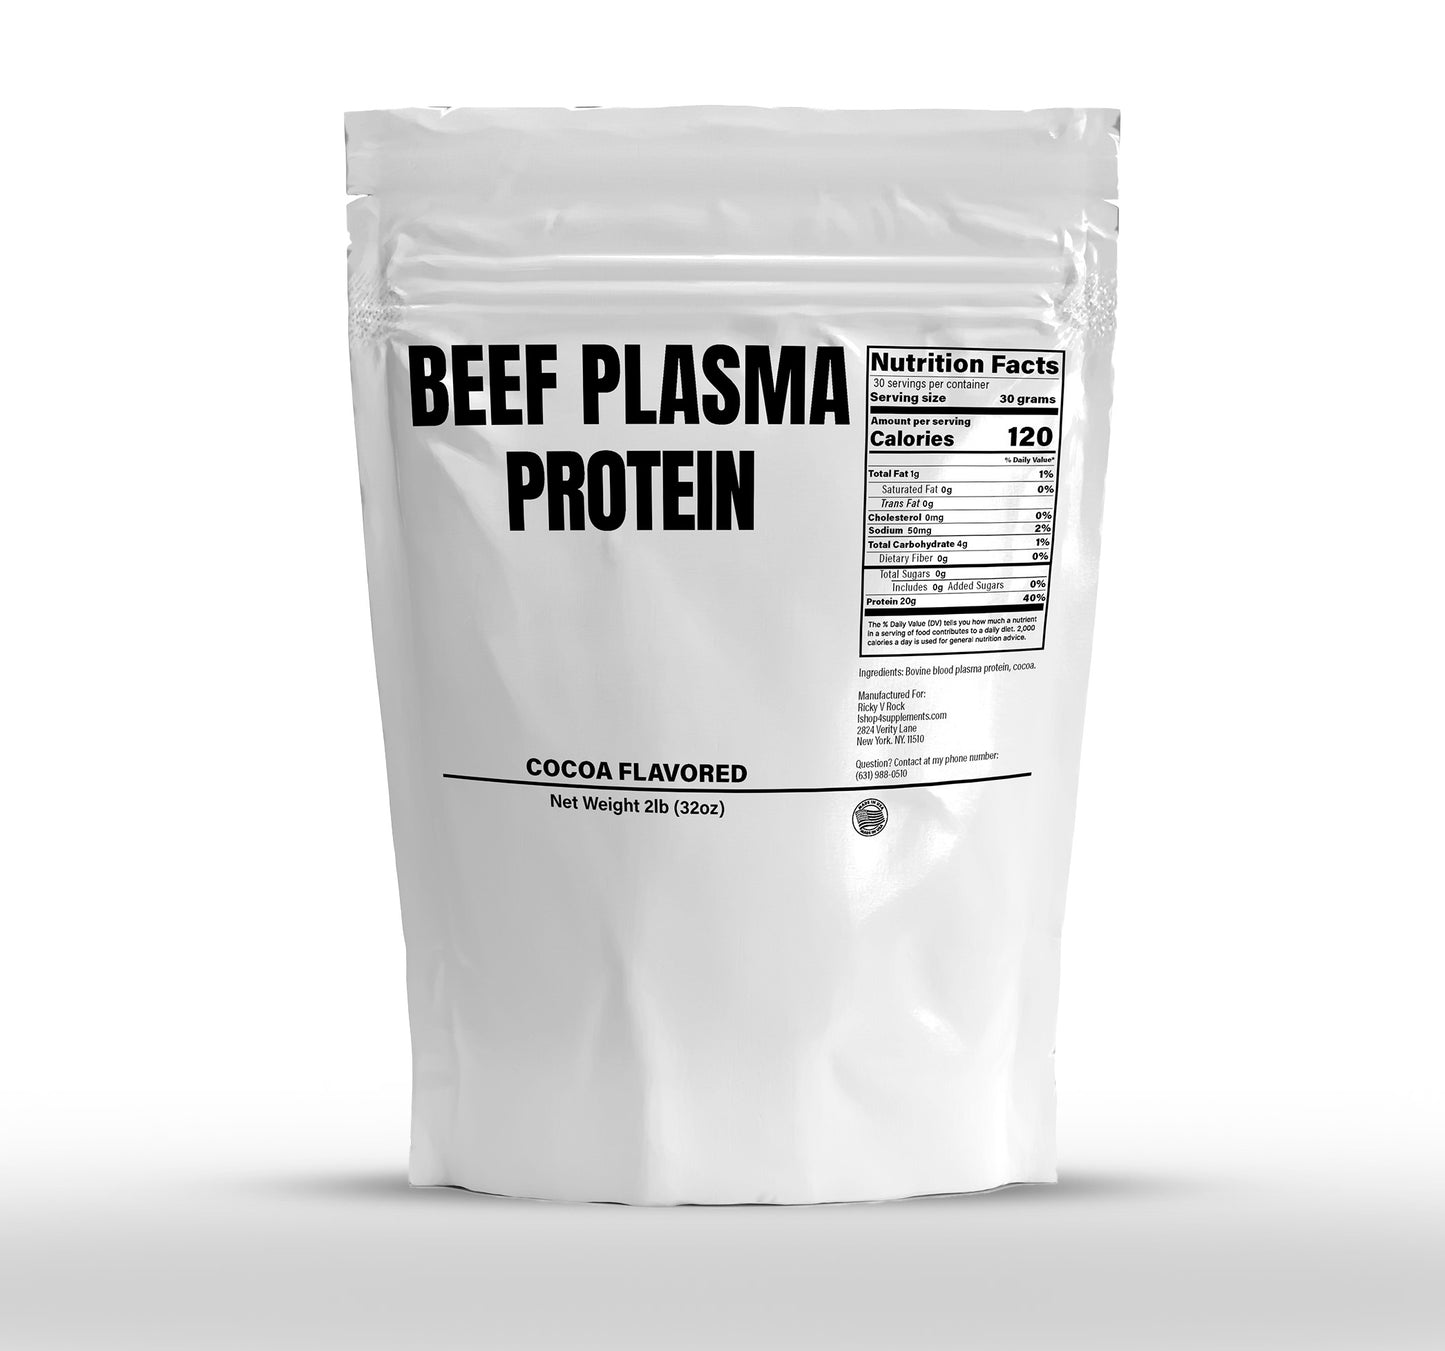 BEEF PLASMA PROTEIN (Bovine Serum-derived protein)